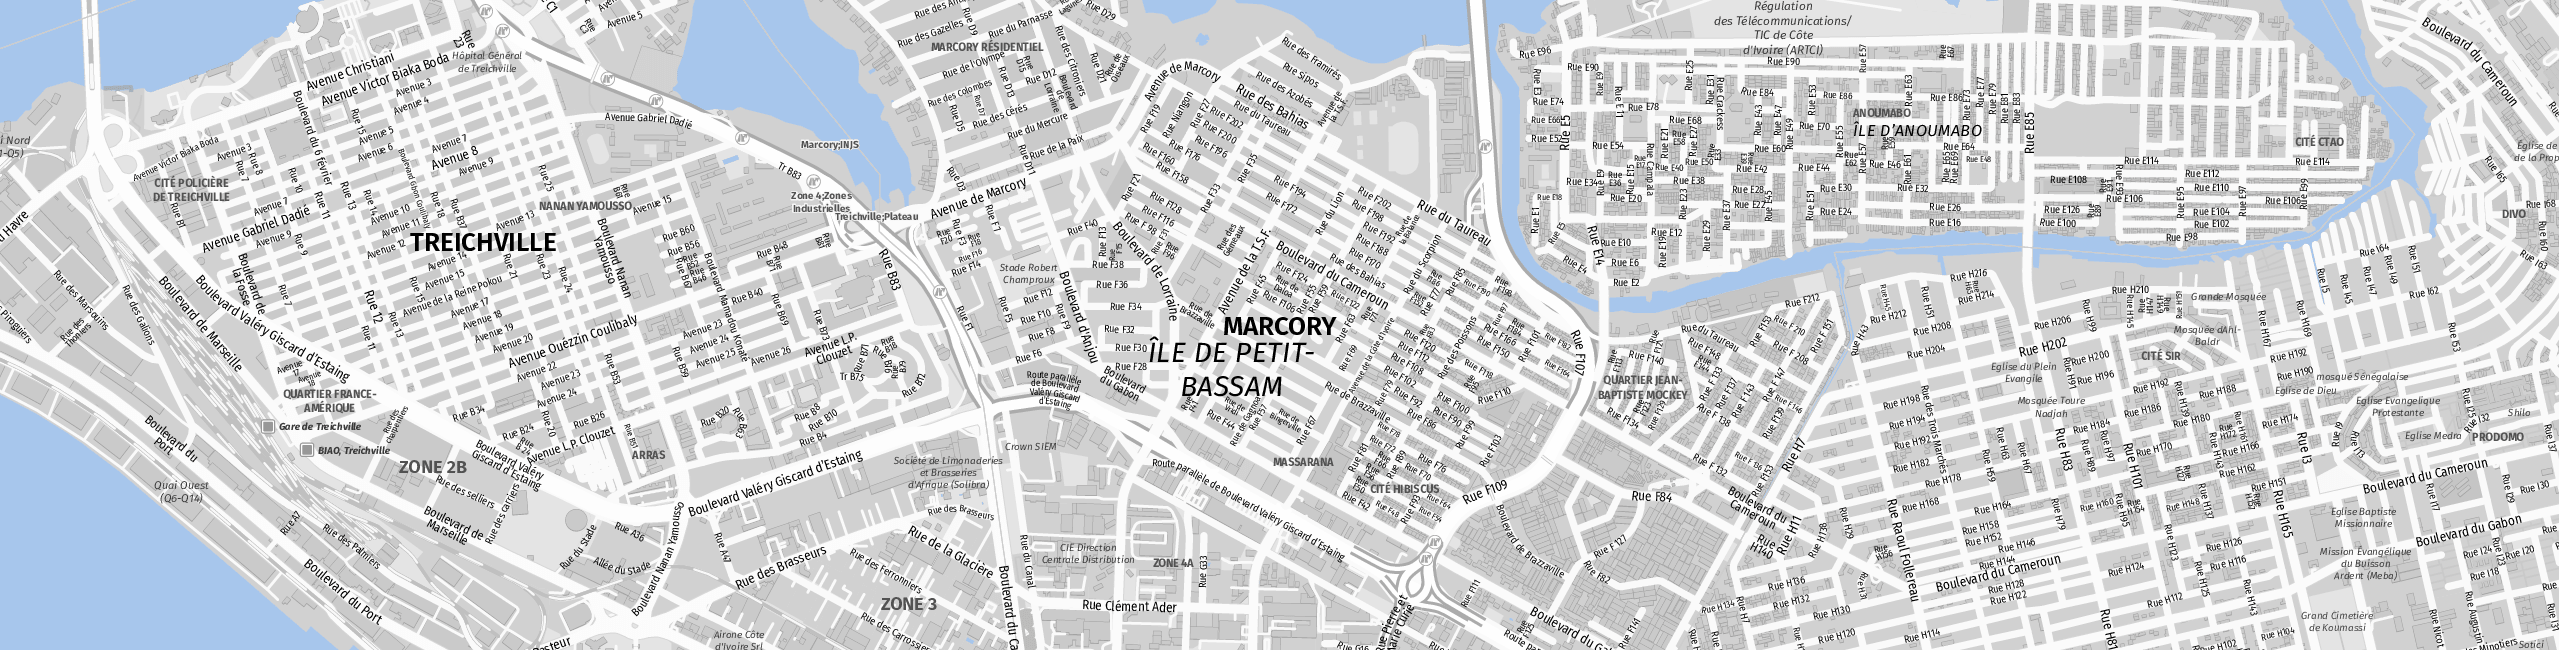 Stadtplan Marcory zum Downloaden.